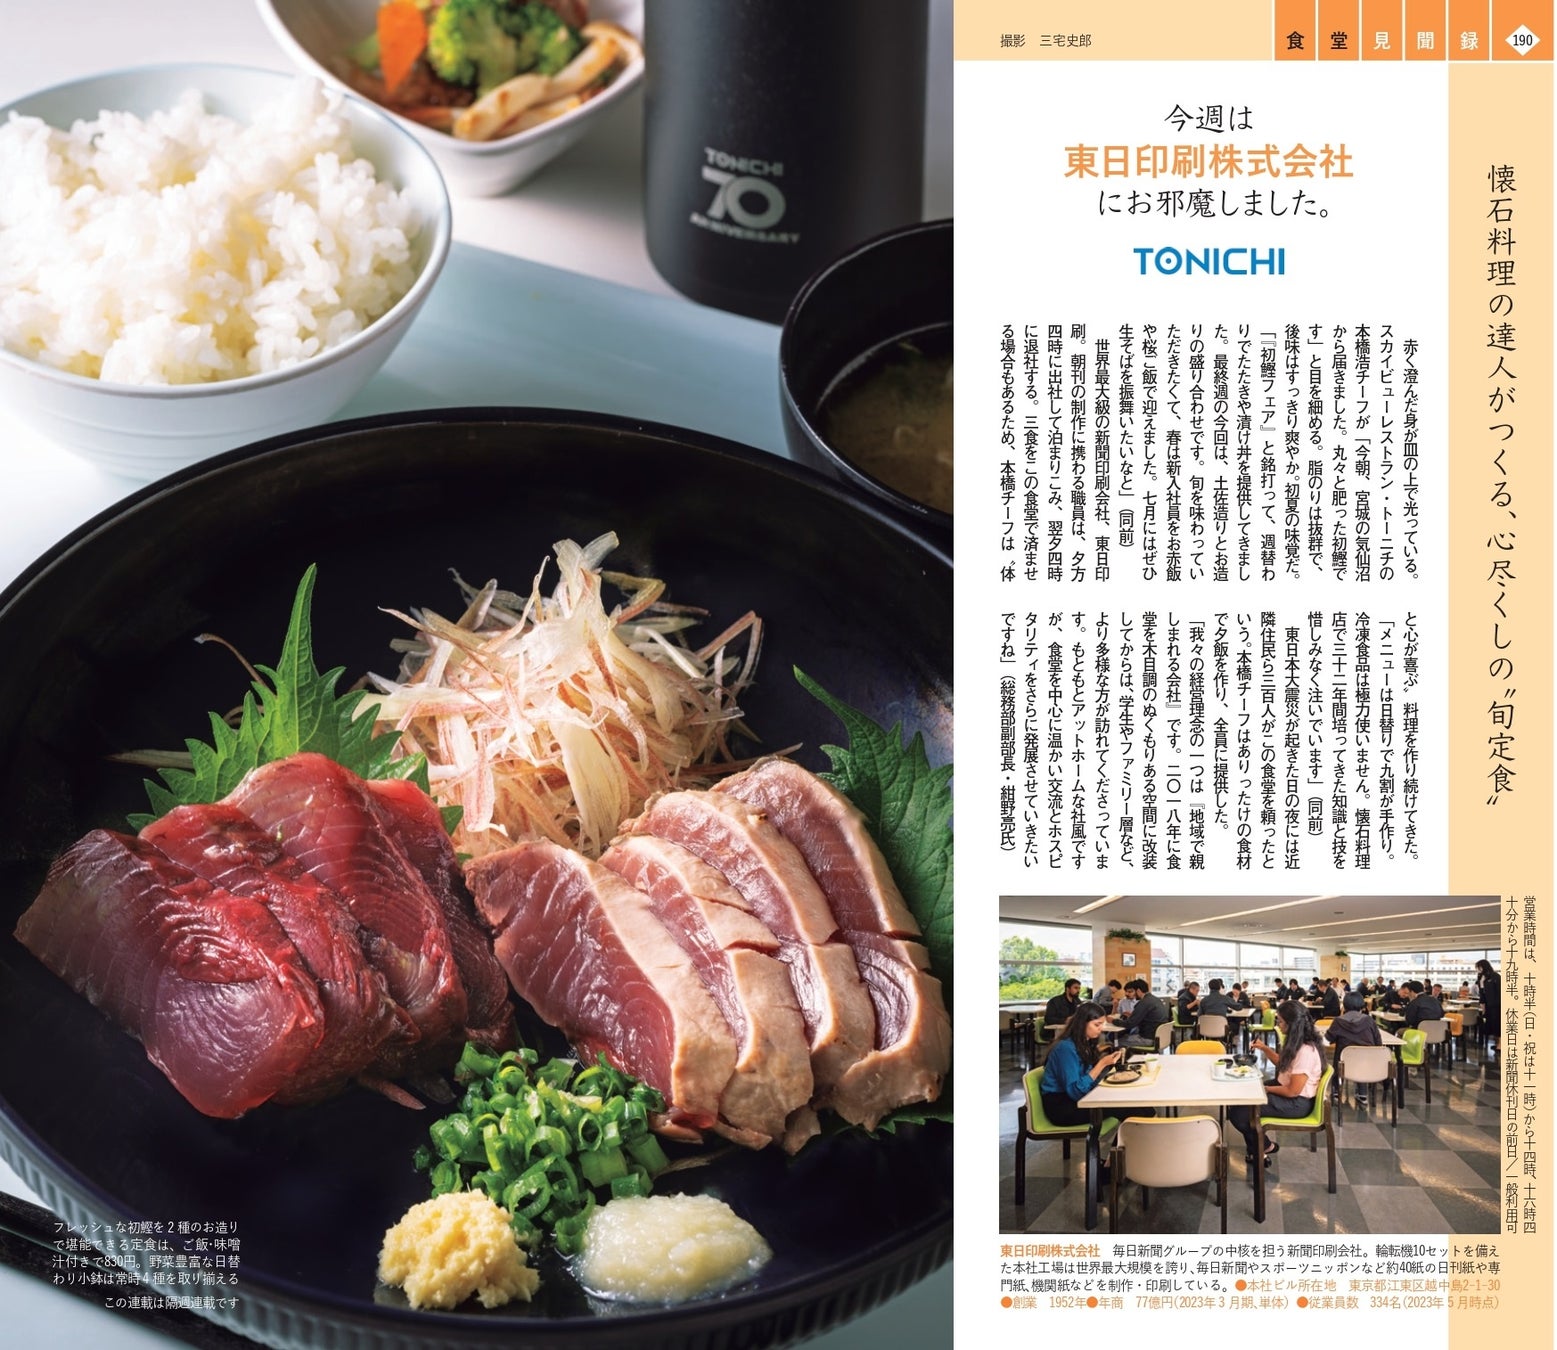 東日印刷（TONICHI） 地域開放の食堂が週刊文春の「食堂見聞録」に紹介されました